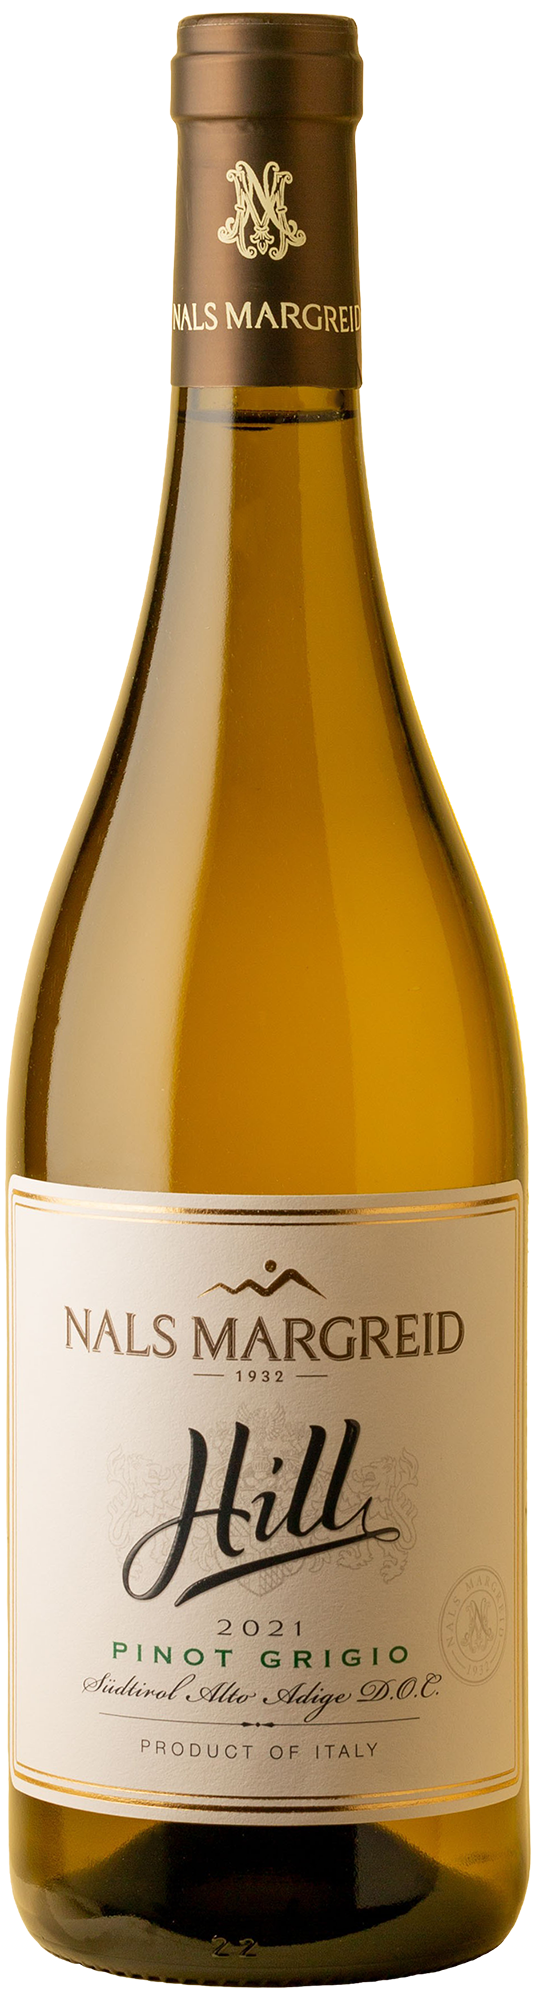 Nals Margreid - Hill Pinot Grigio 2021 White Wine